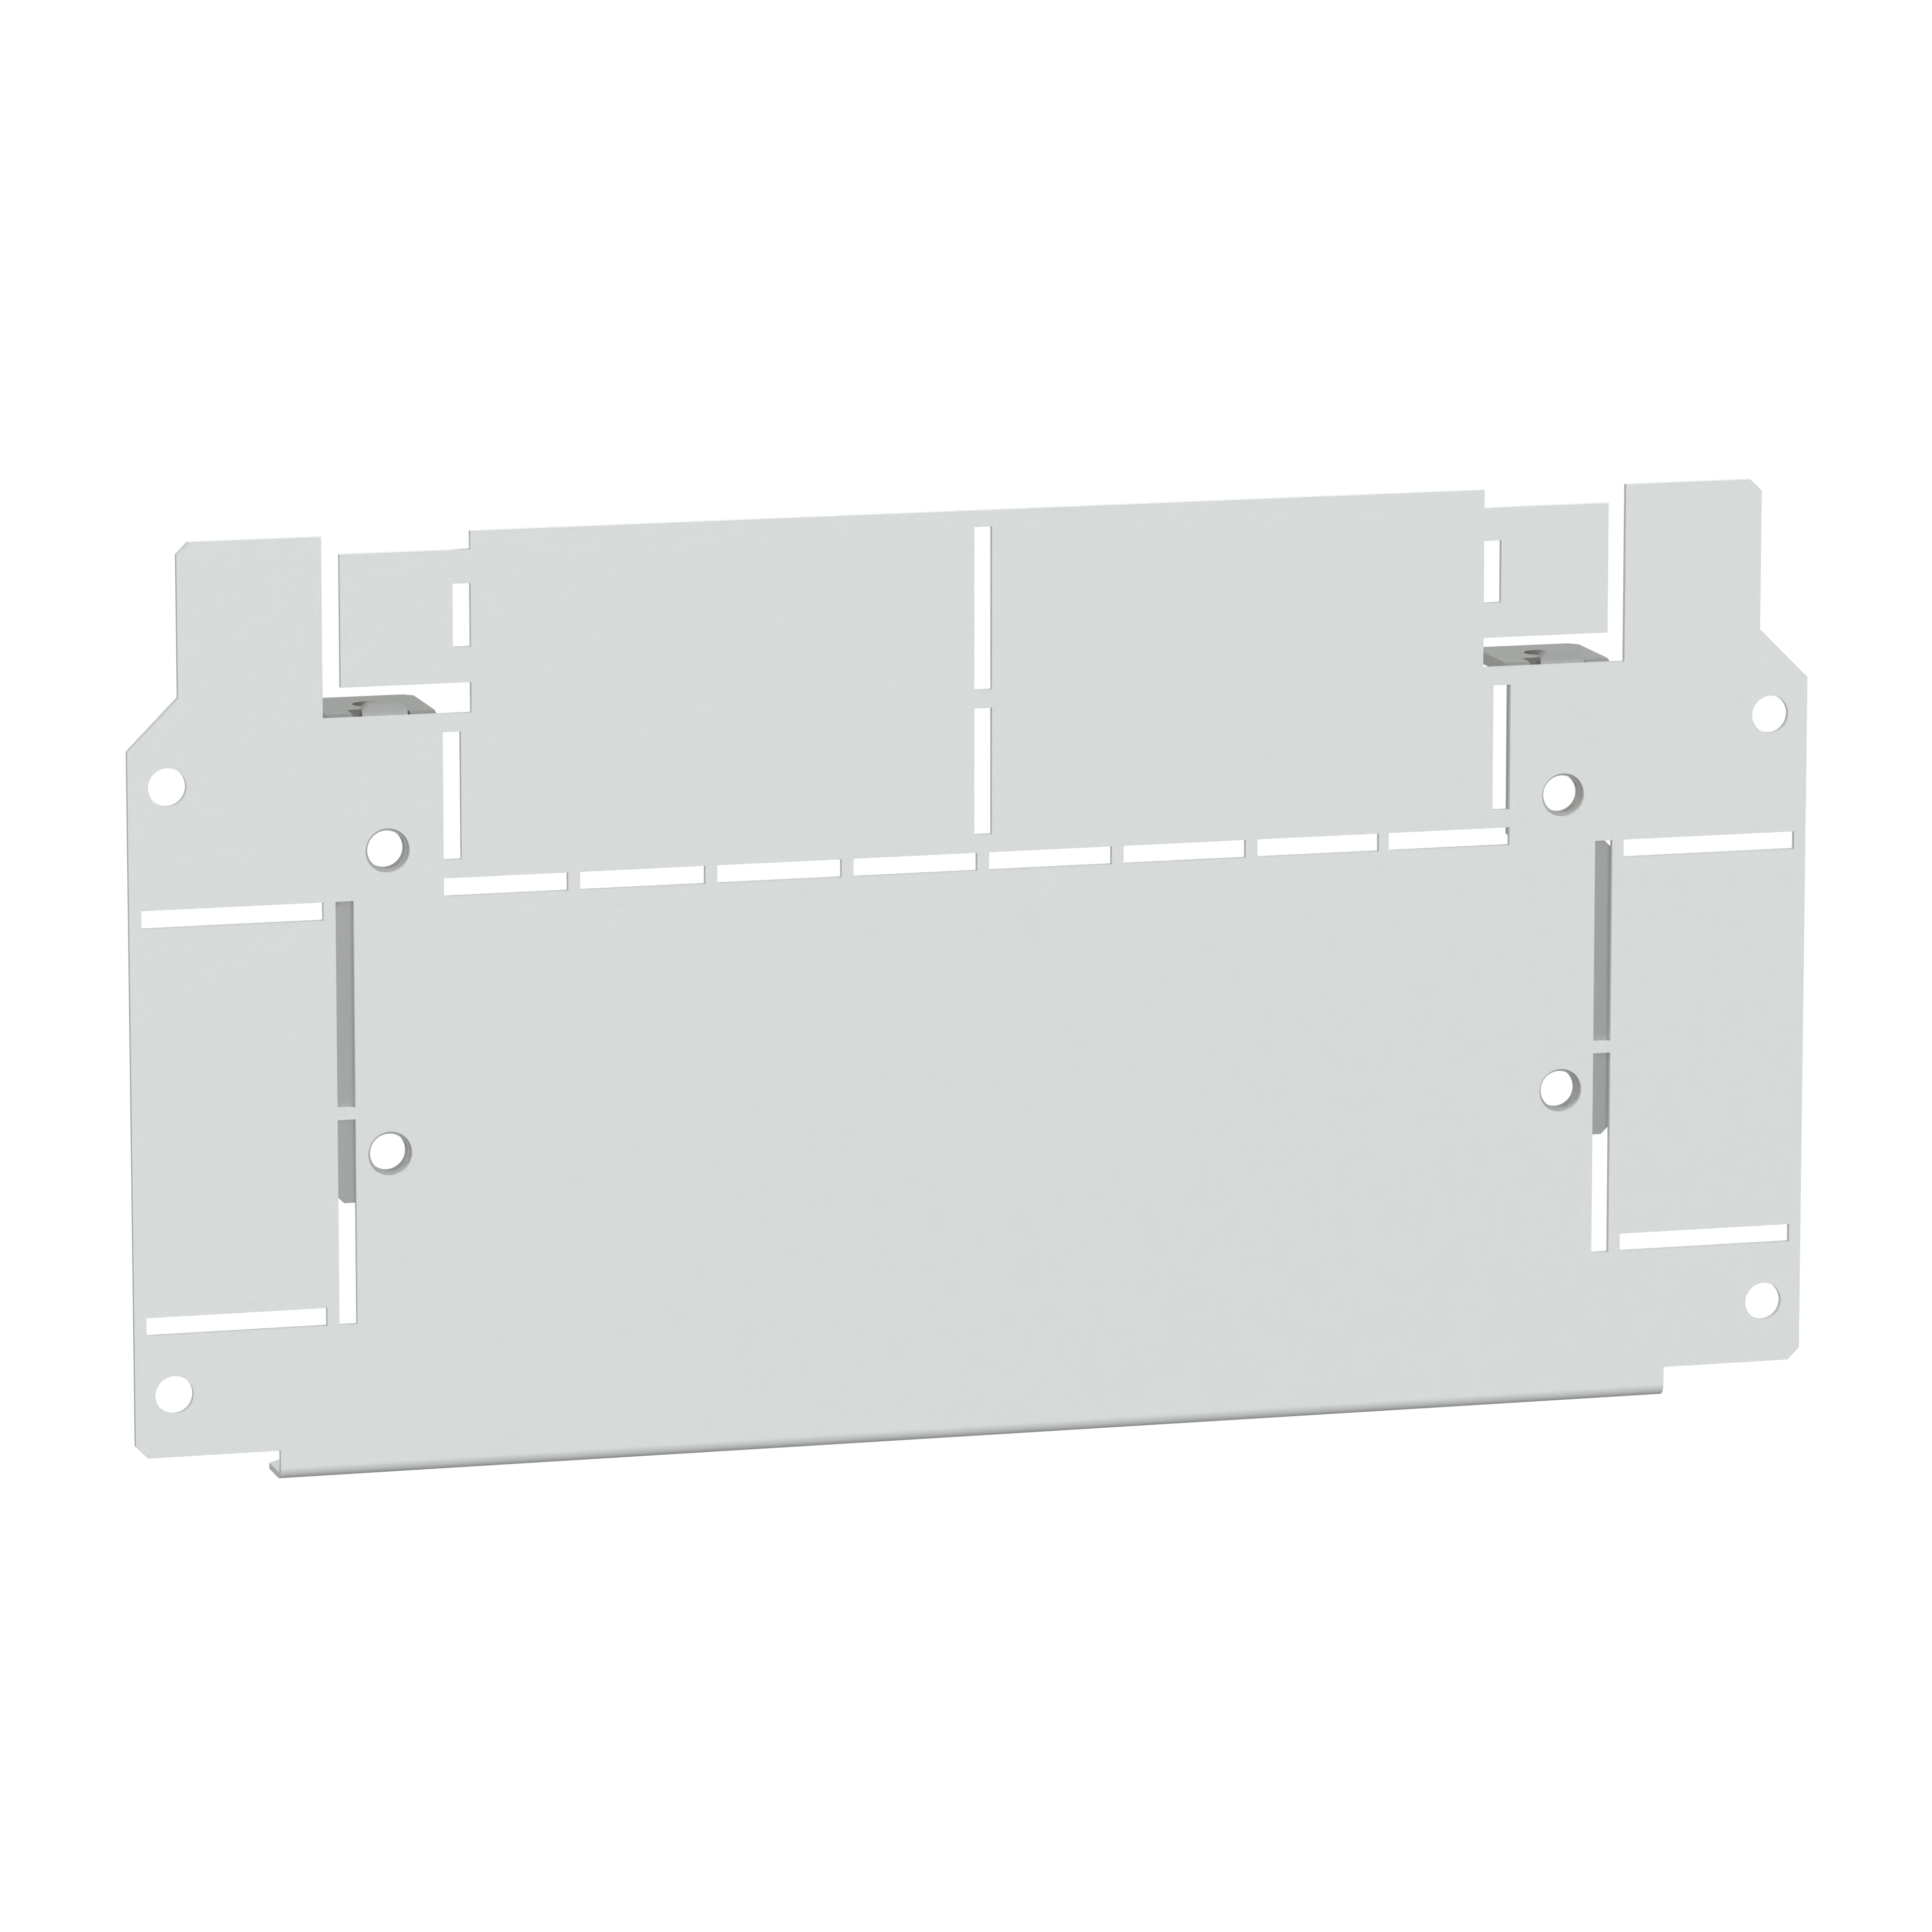 Prisma SeT G: metalna barijera za horizontalno razdvajanje, W=300mm